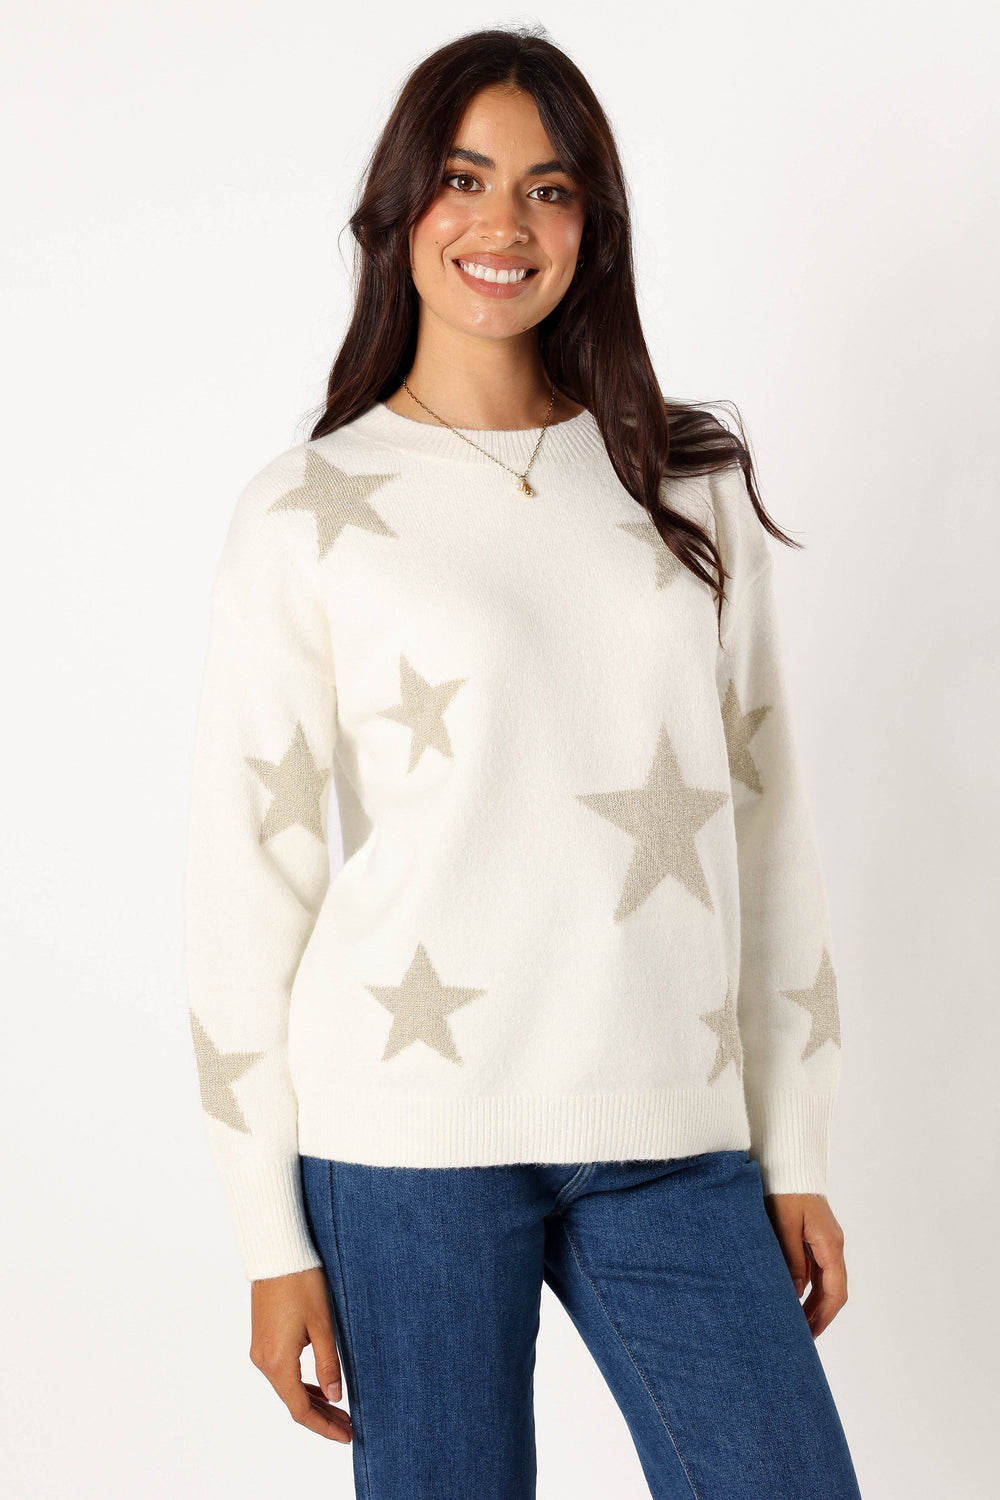 Rosalina Crewneck Shimmer Star Knit Sweater - Cream - Petal & Pup USA